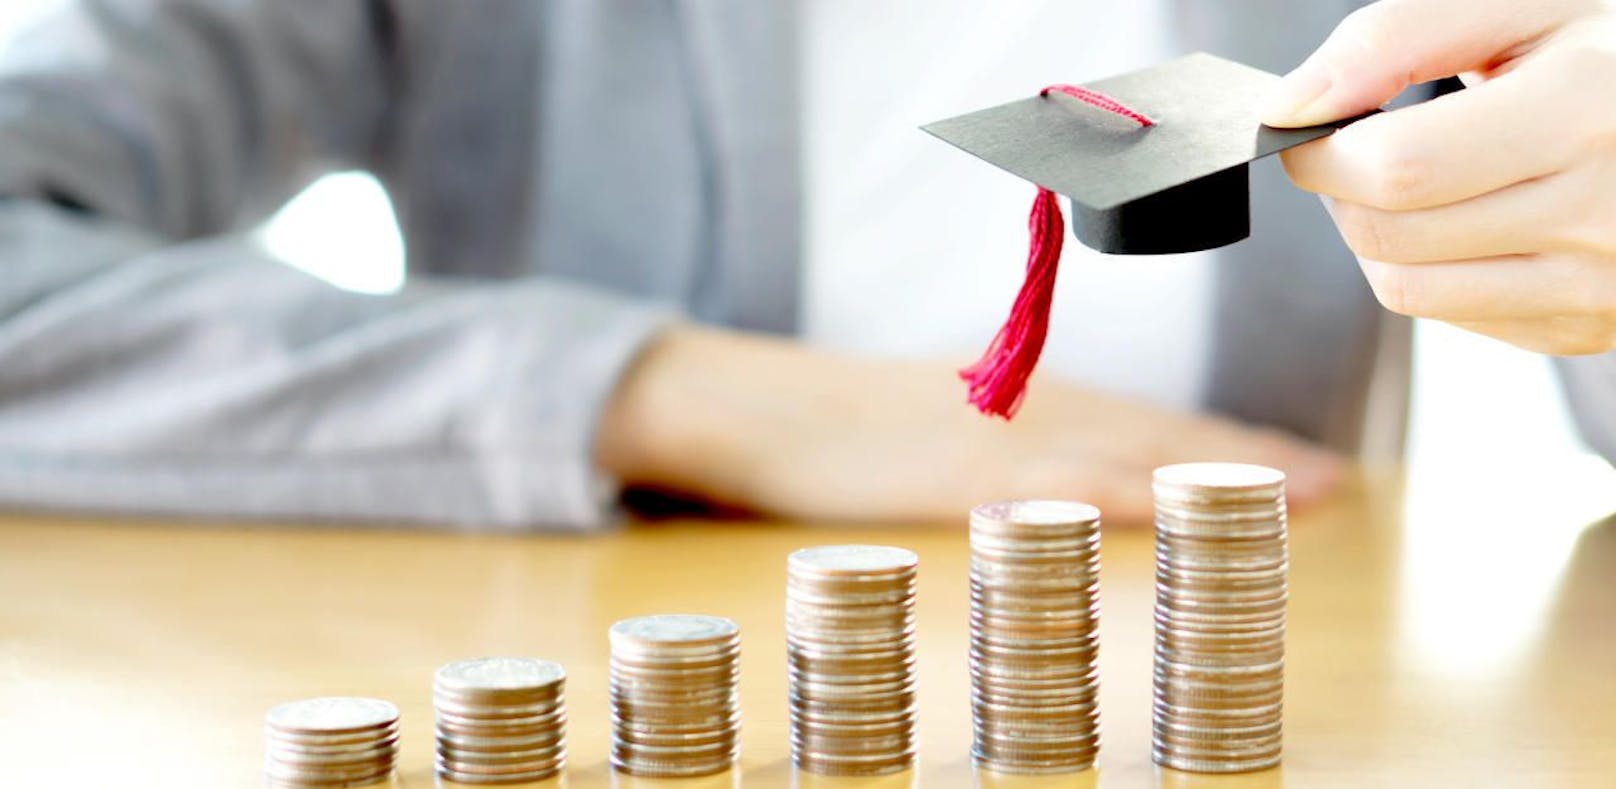 Gratis-Konten für Studenten können häufig teuer werden.